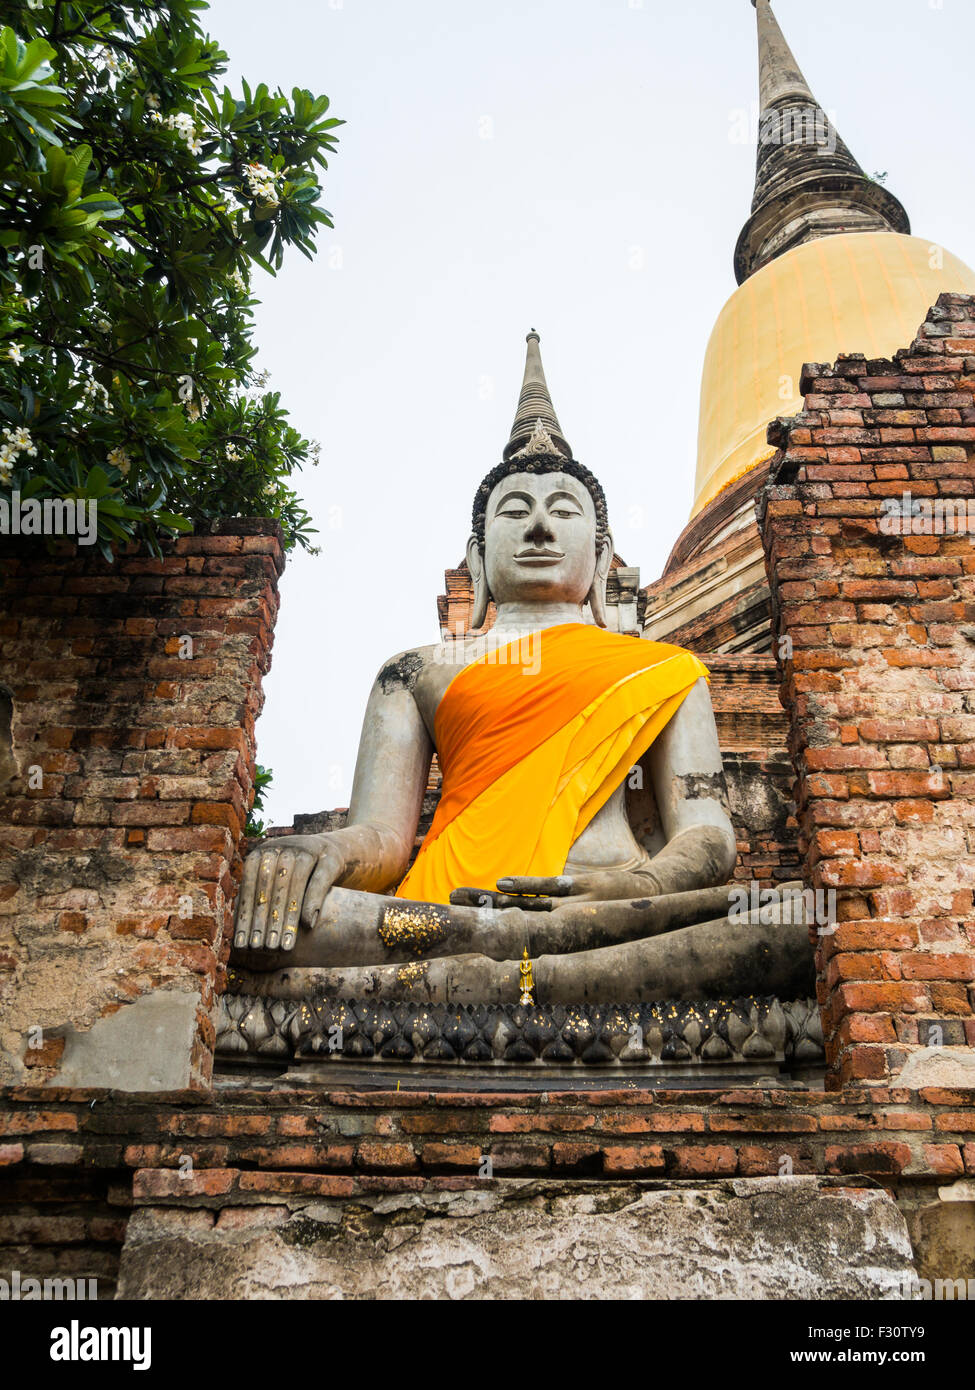 Buddha statue in Wat Yai Chai Mongkol, Ayuttaya, Thailand Stock Photo